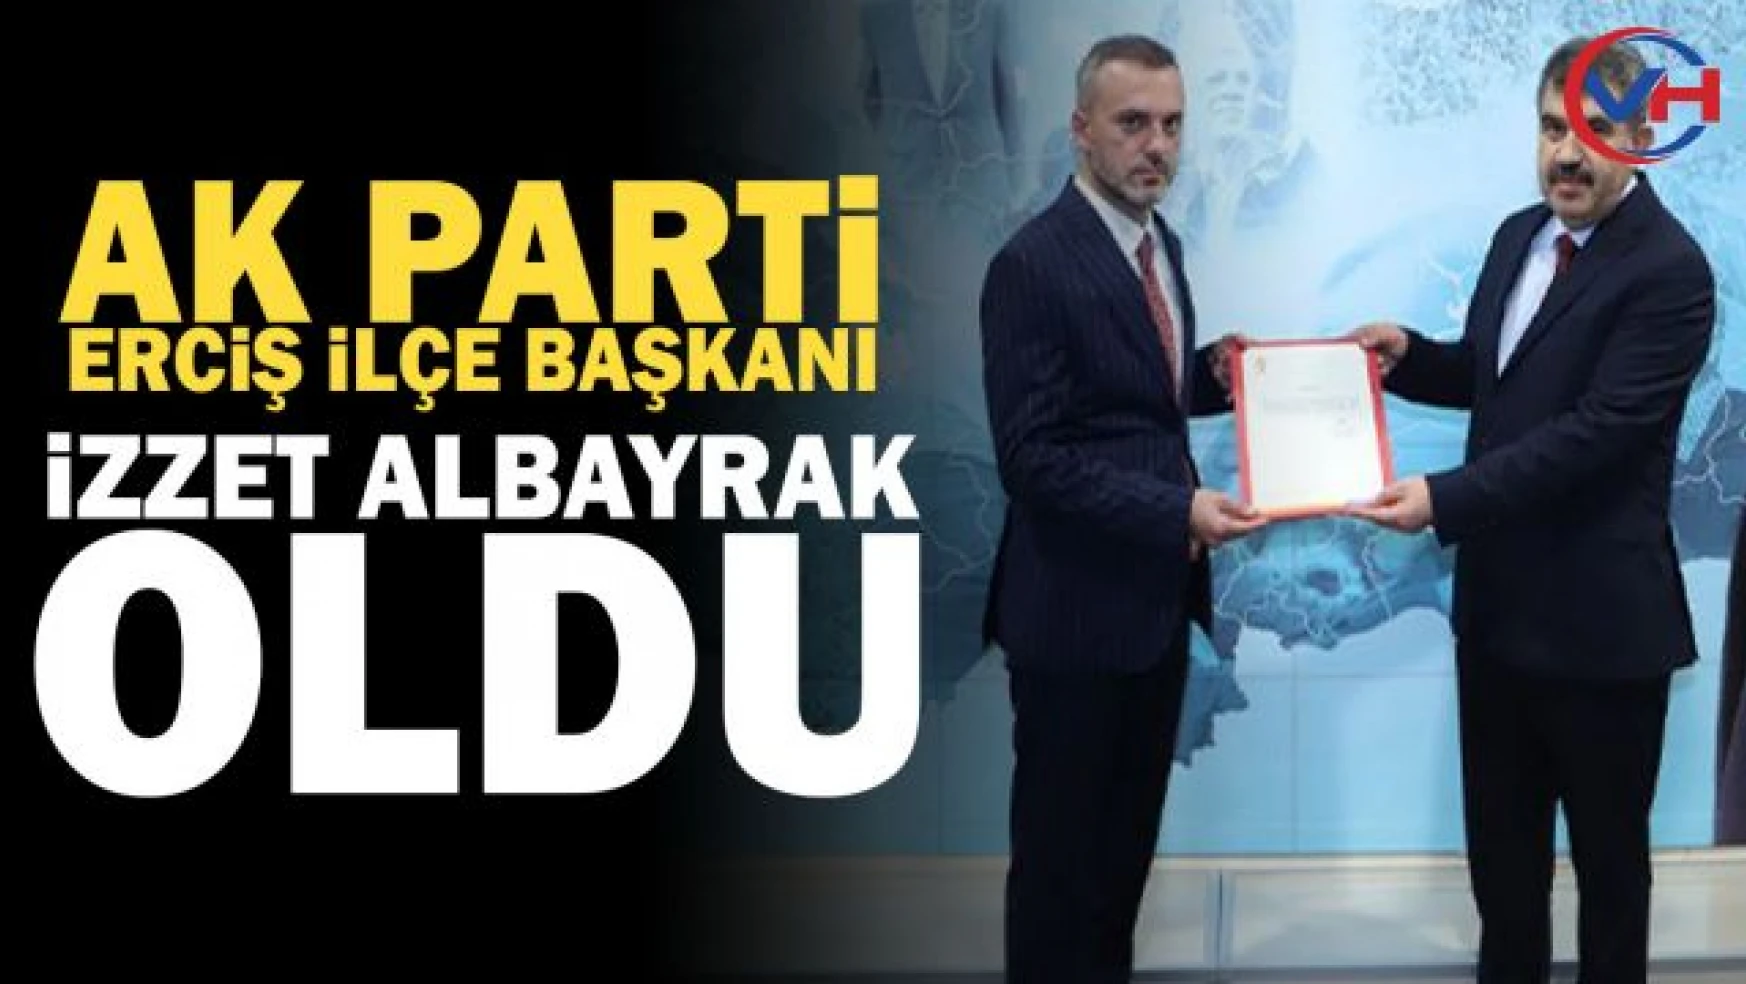 AK Parti Erciş İlçe Başkanlığına İzzet Albayrak atandı